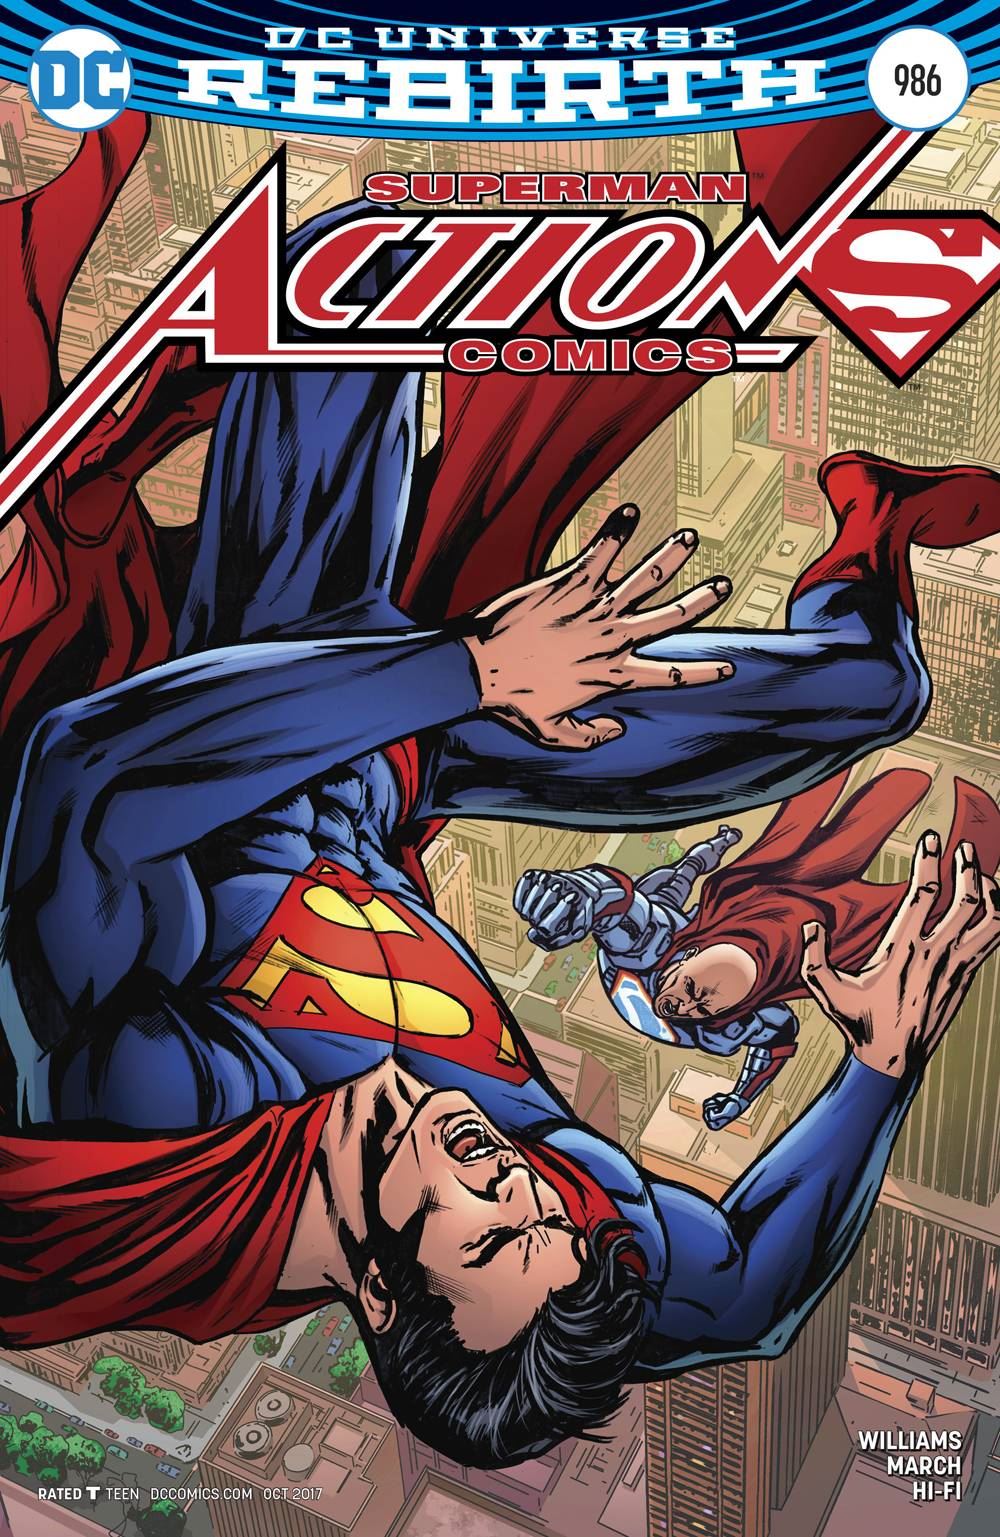 Action Comics #986 (Var Ed) DC Comics Comic Book